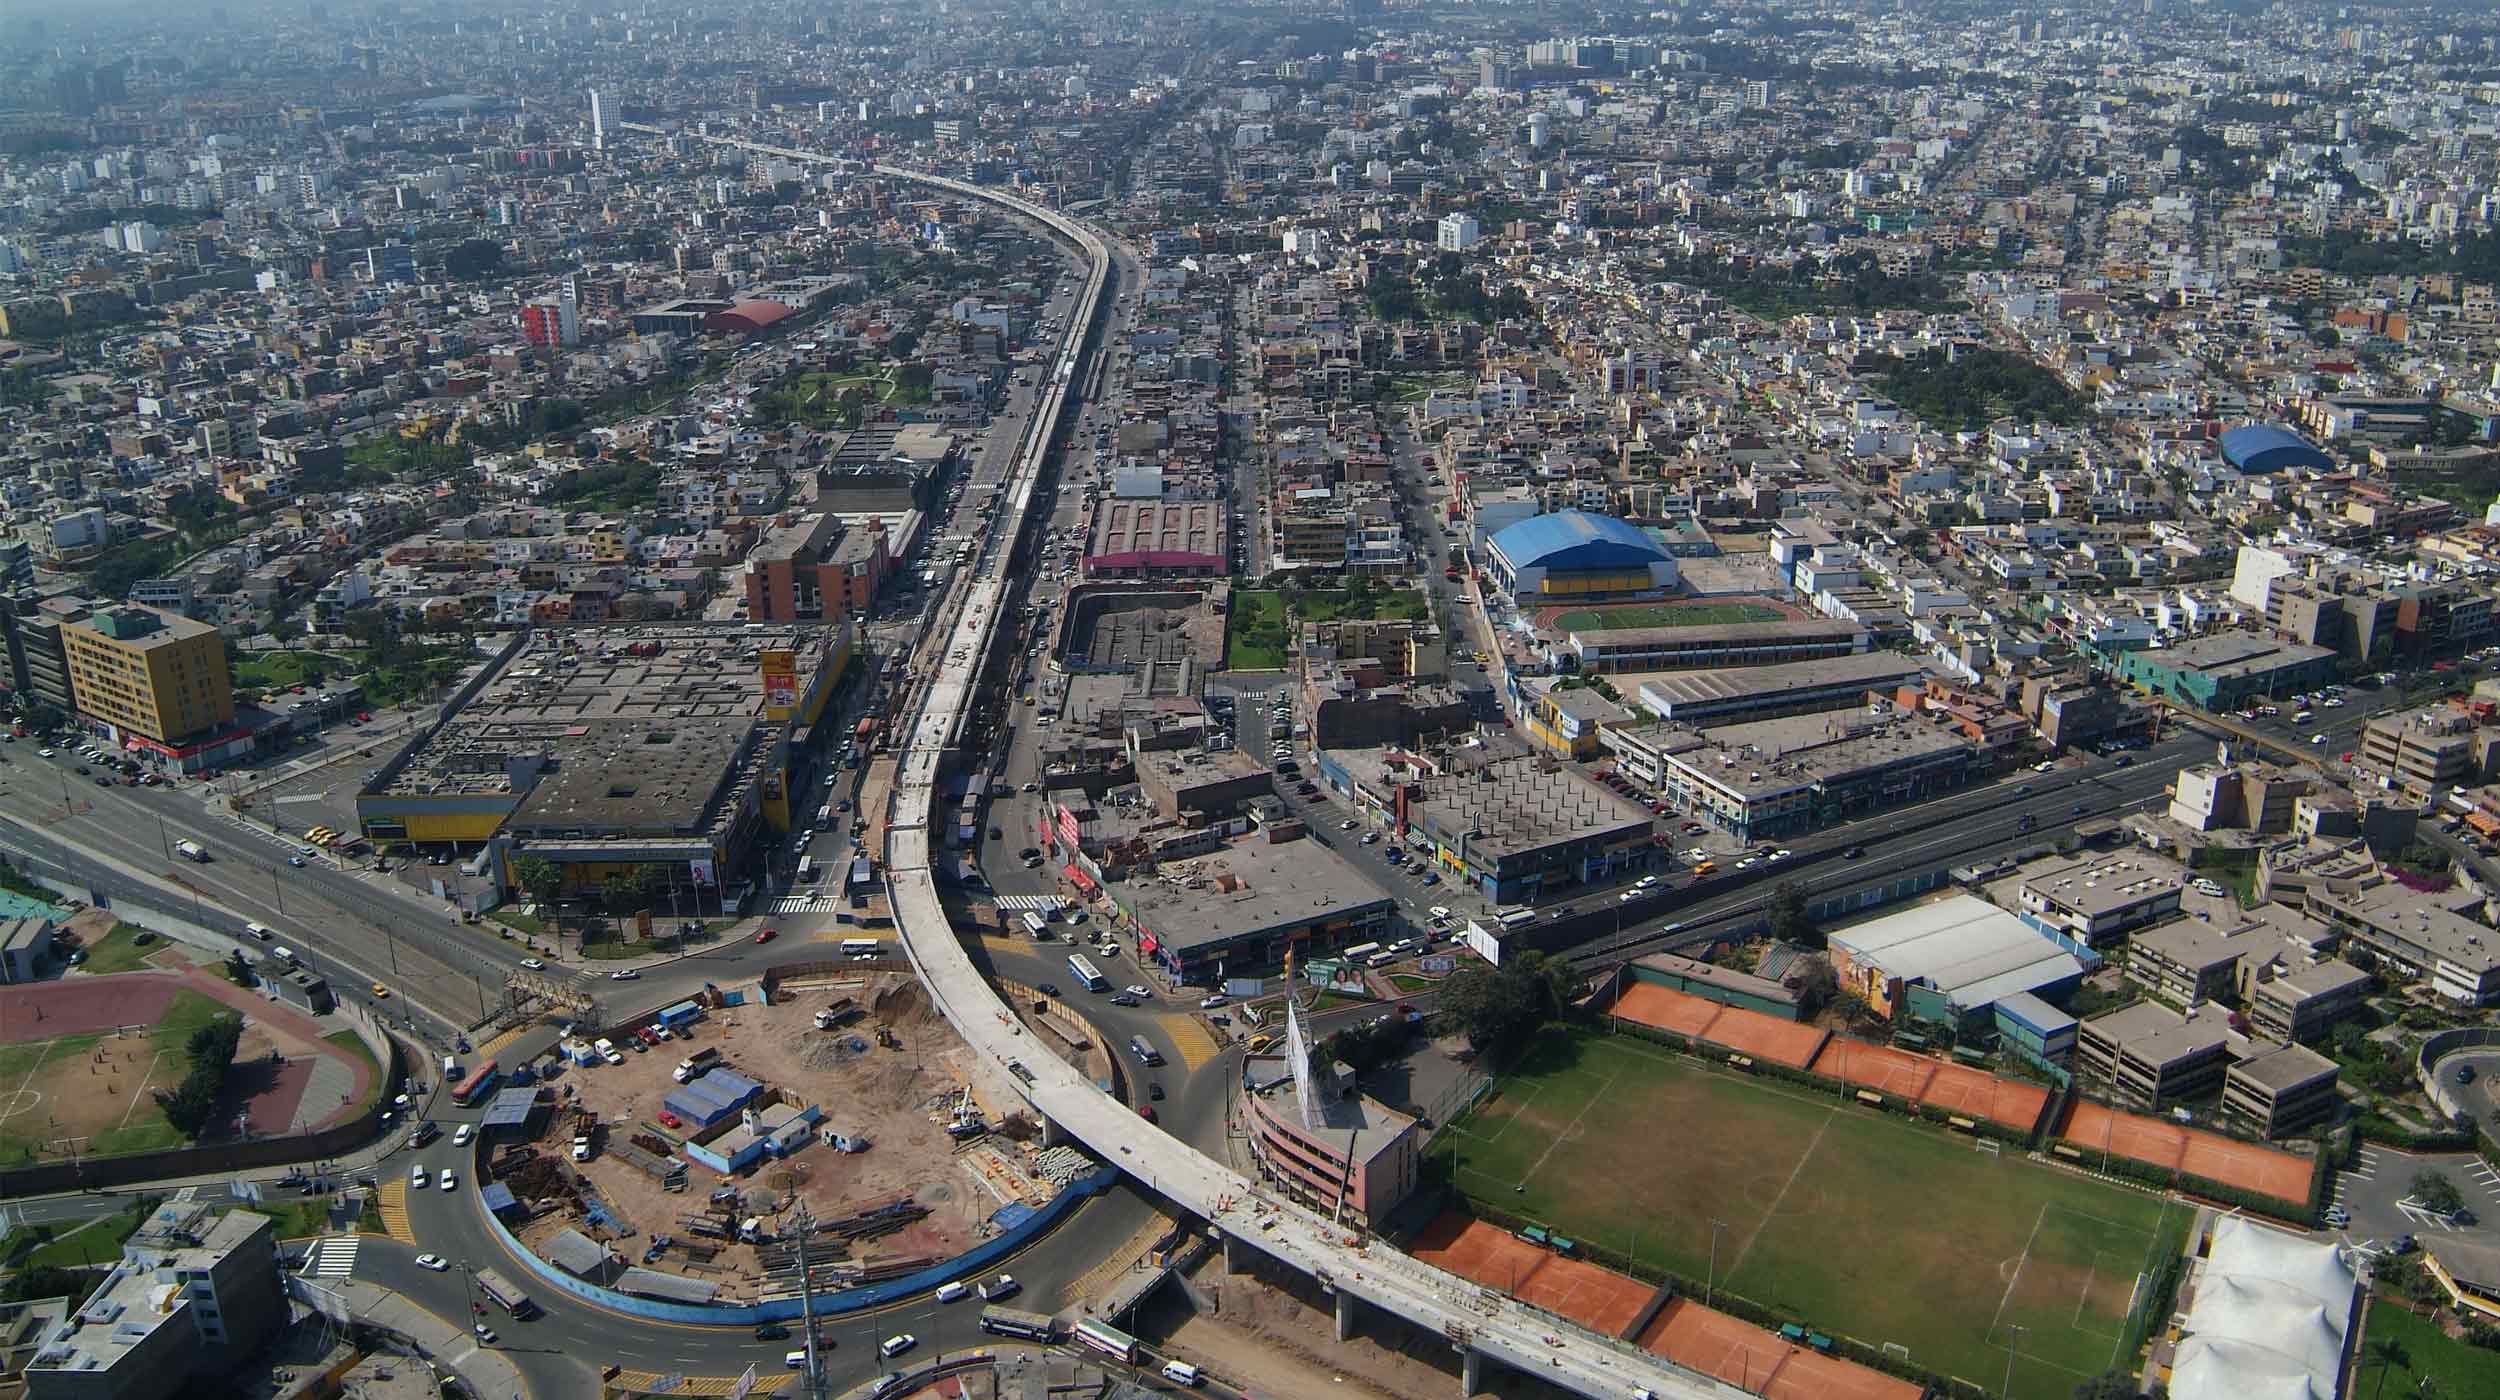 Situé dans la ville de Lima, ce projet emblématique consiste à construire un viaduc aérien de 12,5 km avec 8 stations.